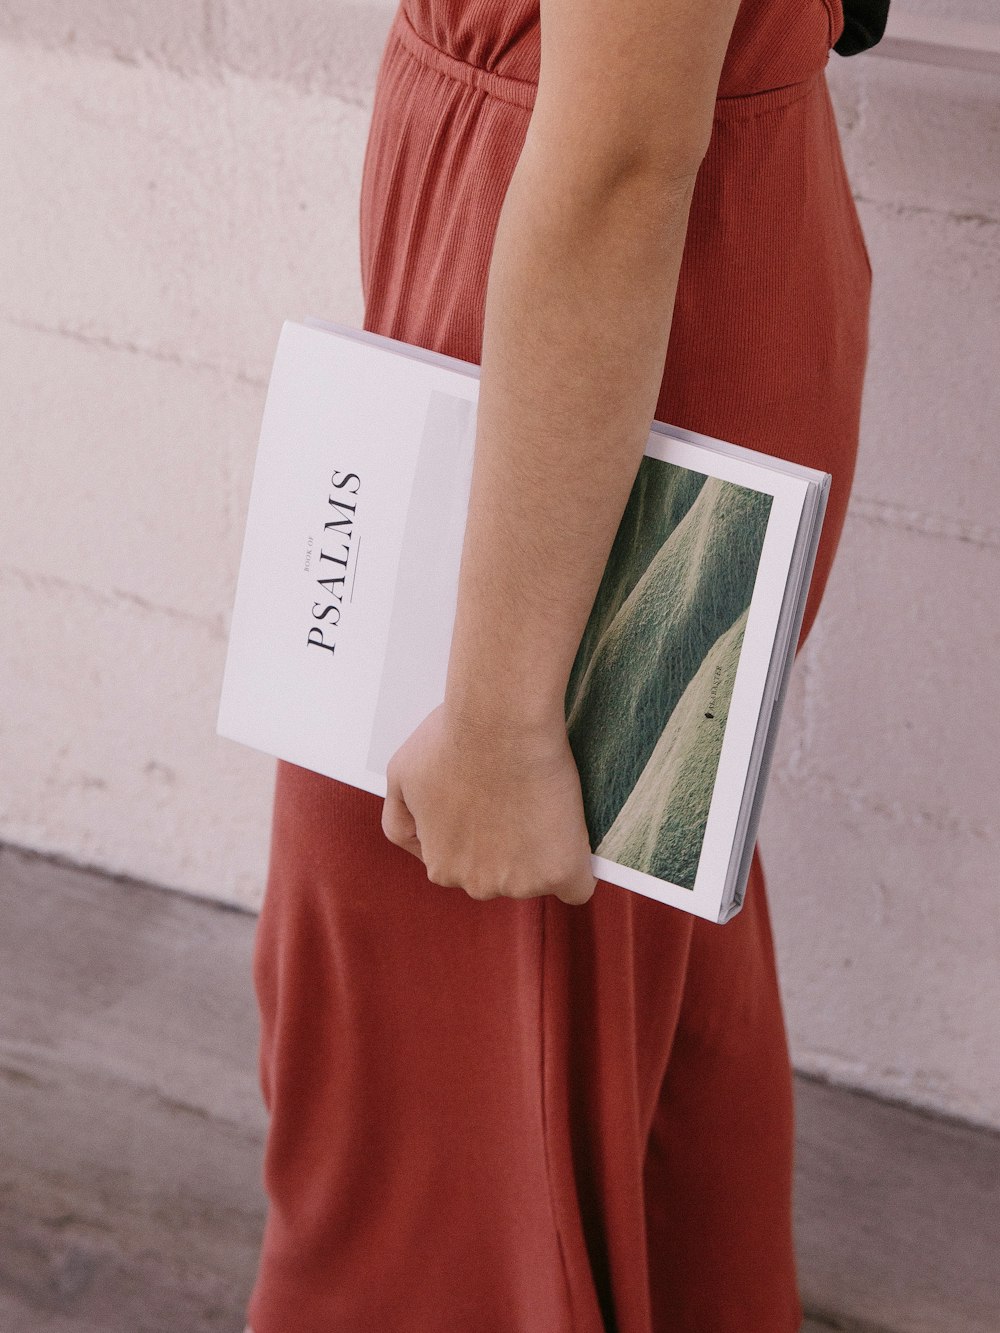 femme portant une combinaison rouge tenant un livre de psaumes